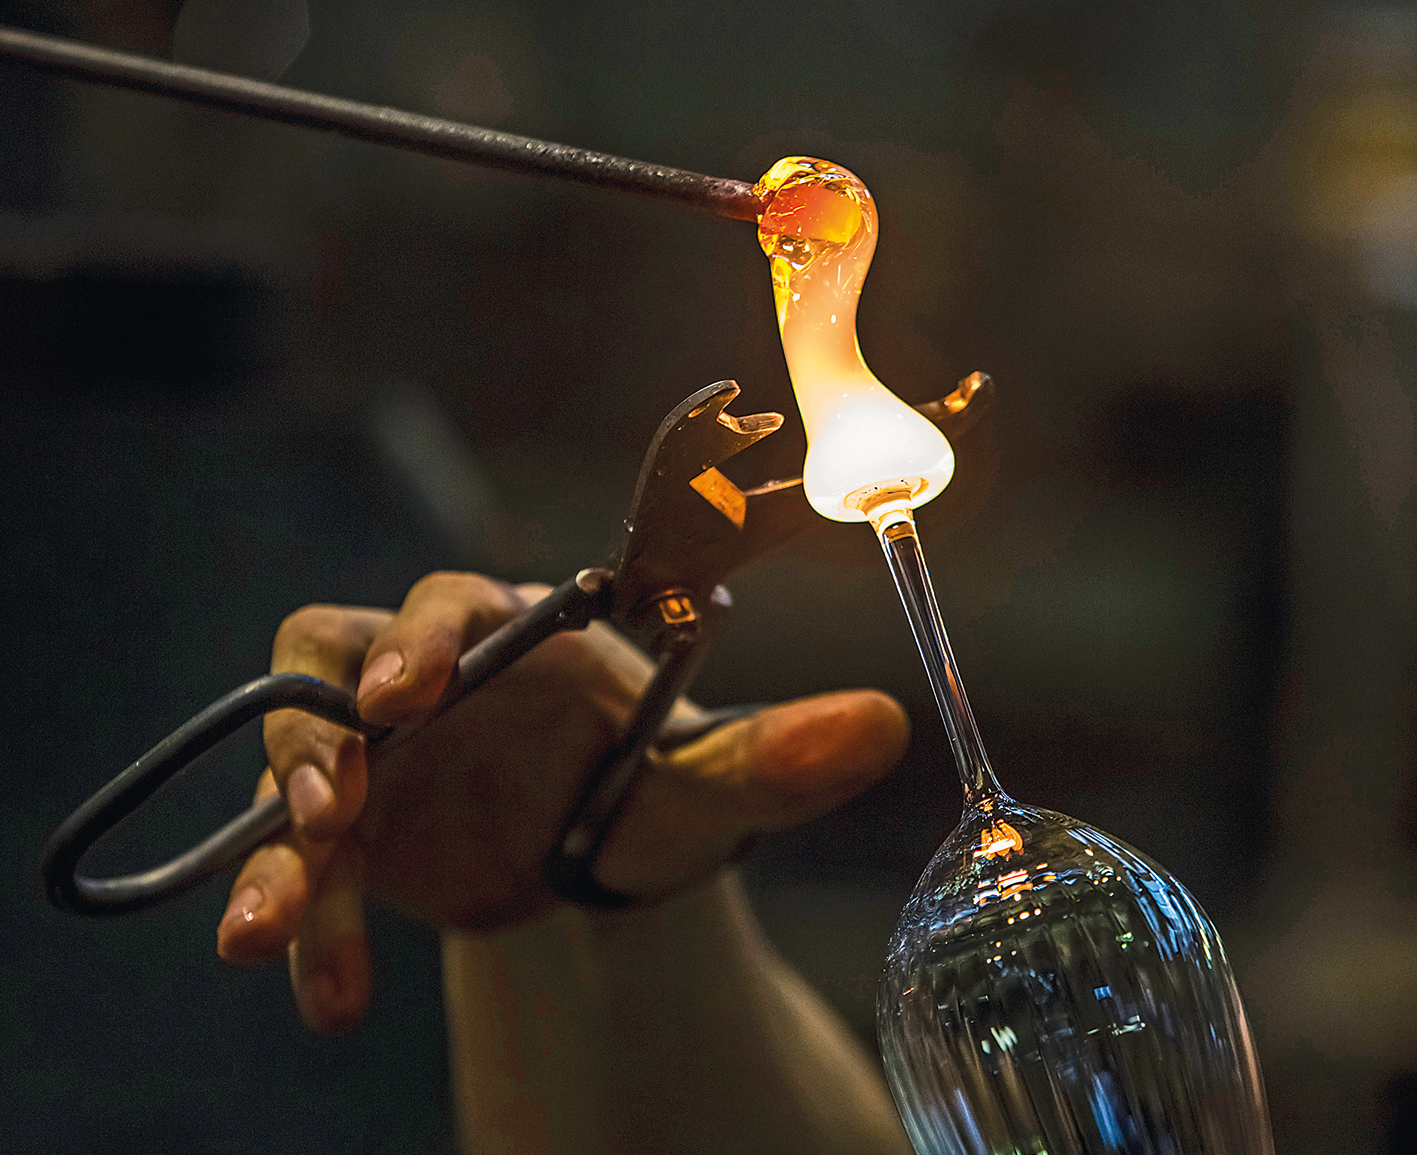 Fotografia. Mão de uma pessoa segurando uma ferramenta, semelhante a uma tesoura, na direção da parte inferior de uma taça de vidro que ainda está sendo moldada, maleável e quente, com cor amarelada.